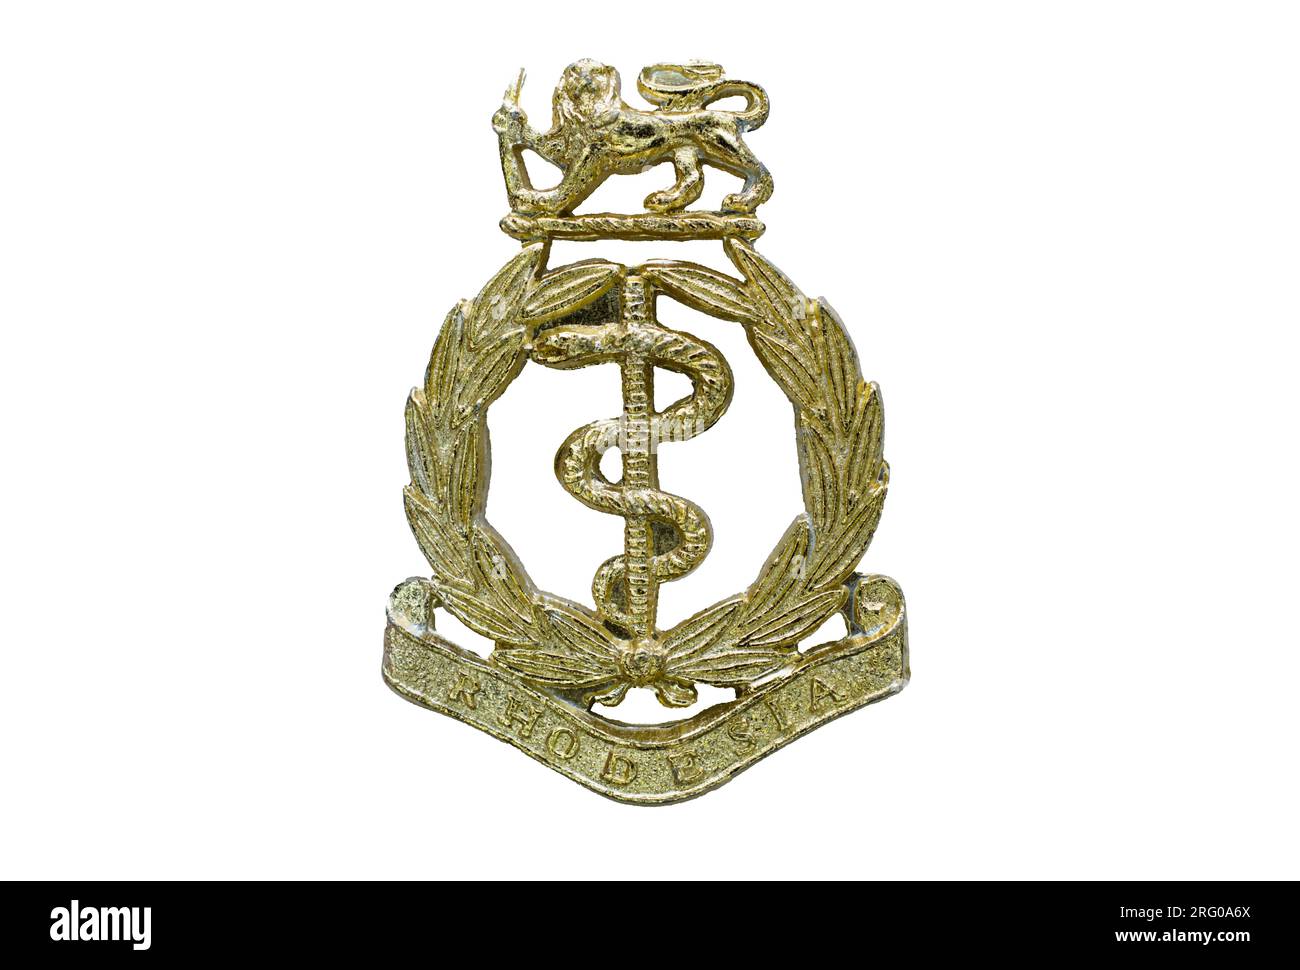 Das Mützenabzeichen des Rhodesian Army Medical Corps, c. 1970-1979. Stockfoto